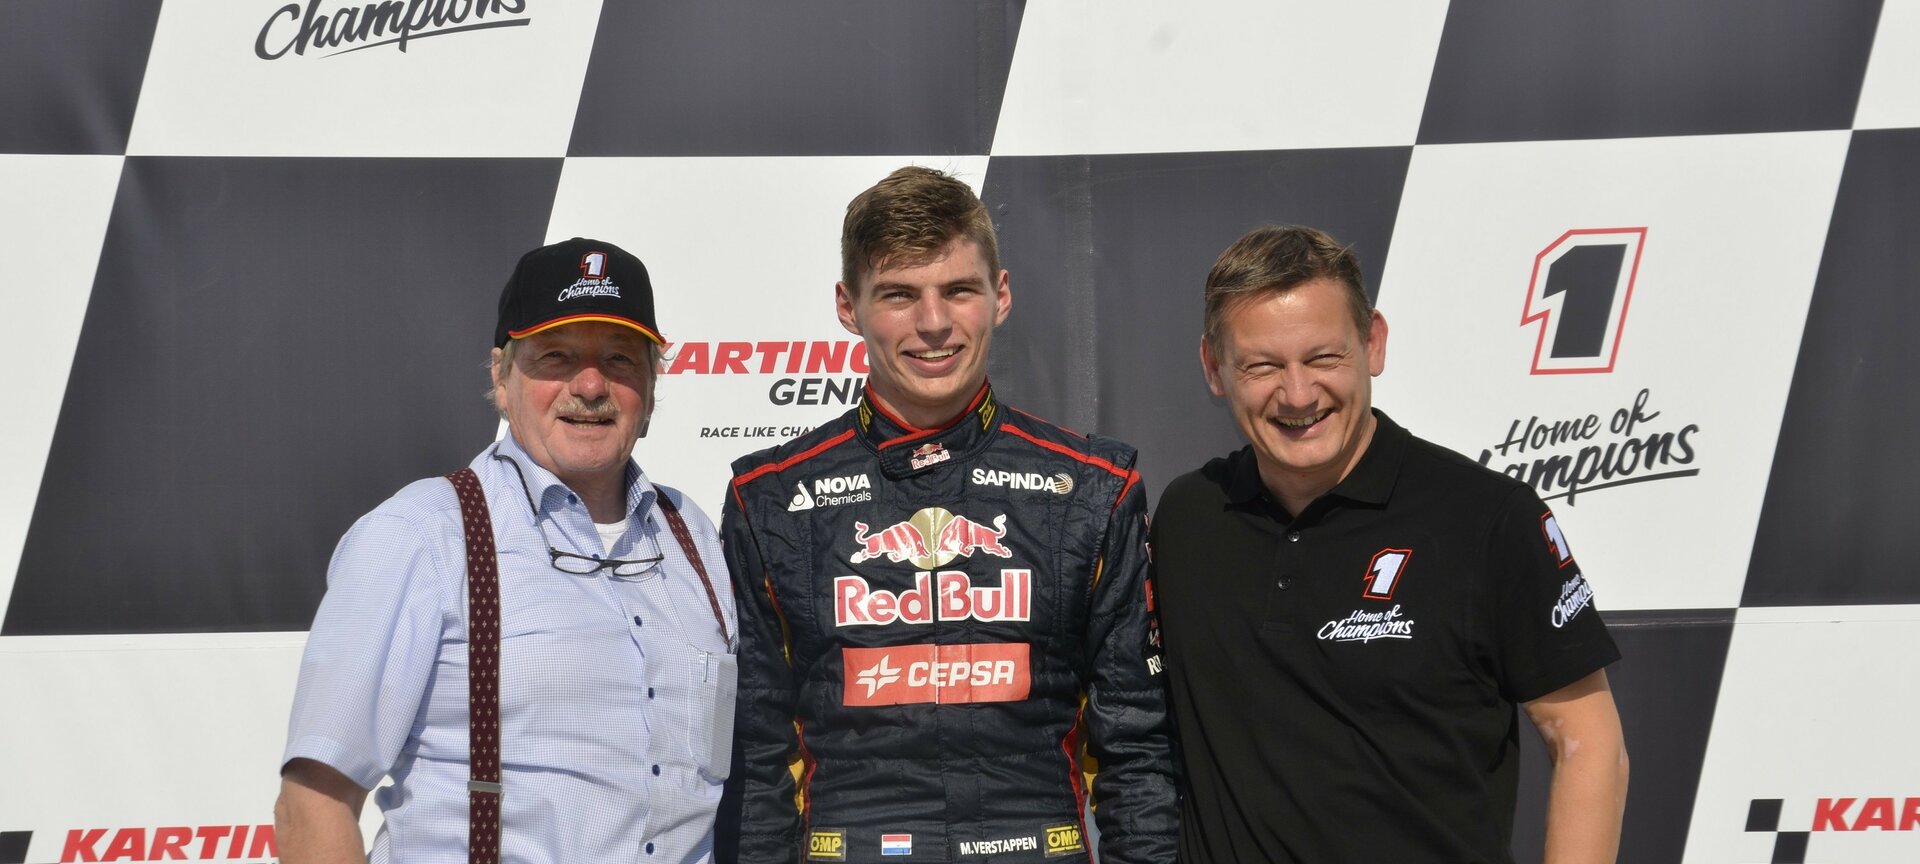 Karting Genk - Spot regelmatig beroemdheden, zoals F1 piloot Max Verstappen!